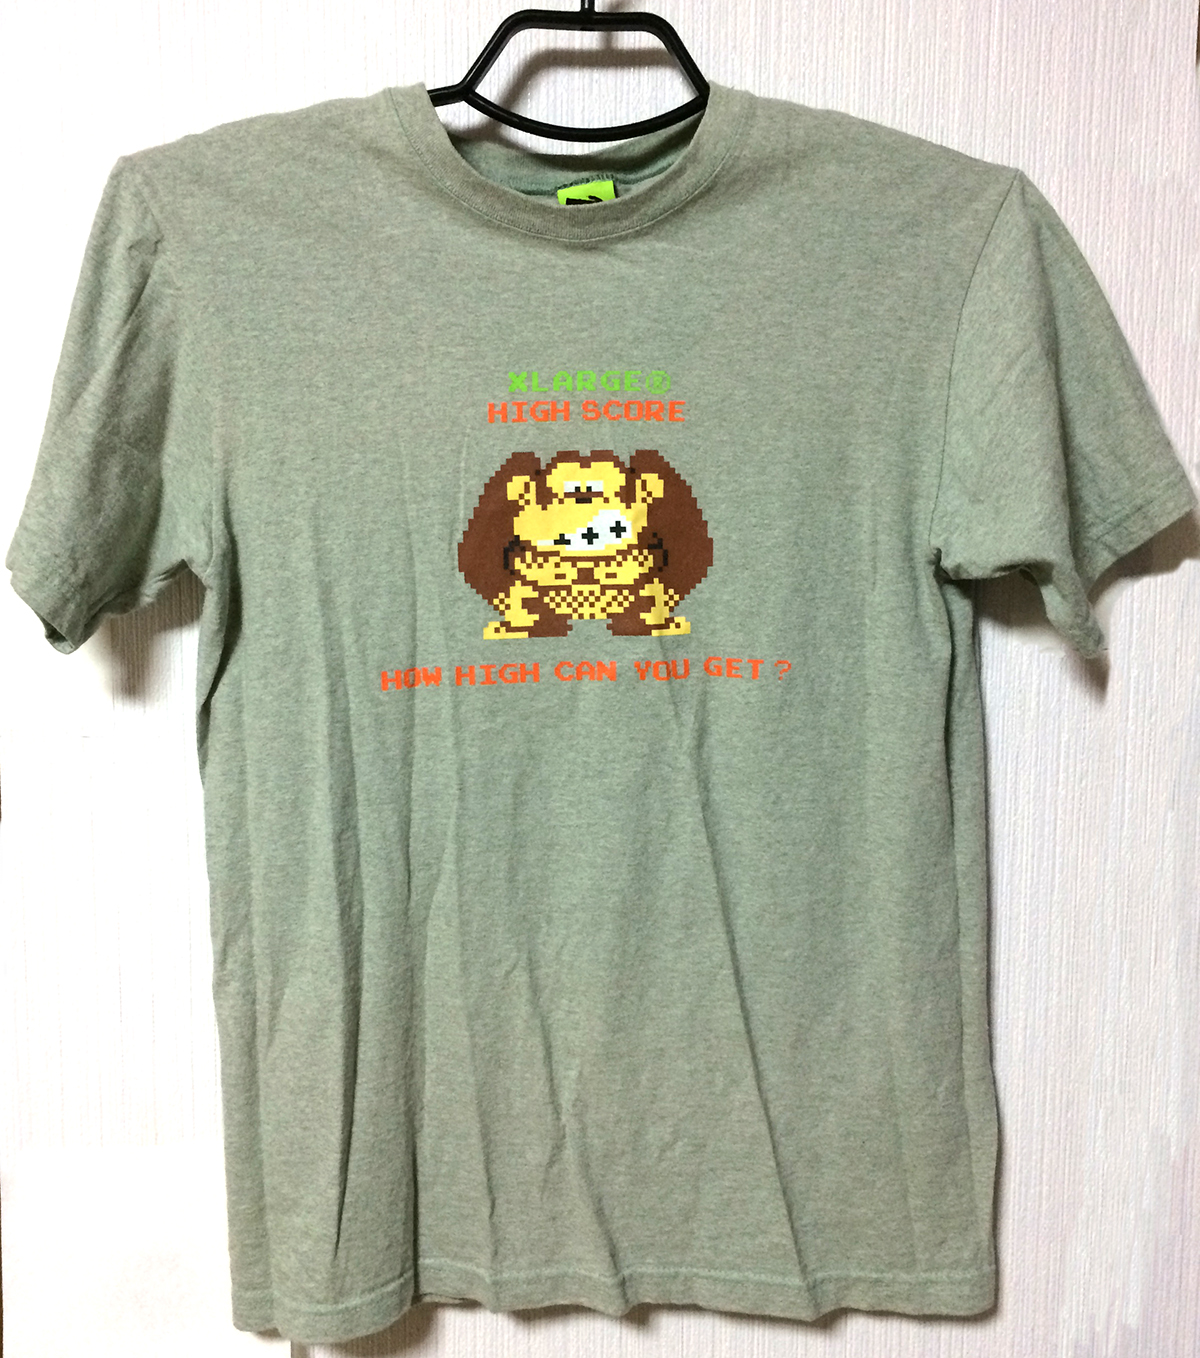 任天堂「ドンキーコング」Tシャツ(2)/Nintendo "Donkey Kong" T-shirts(2)